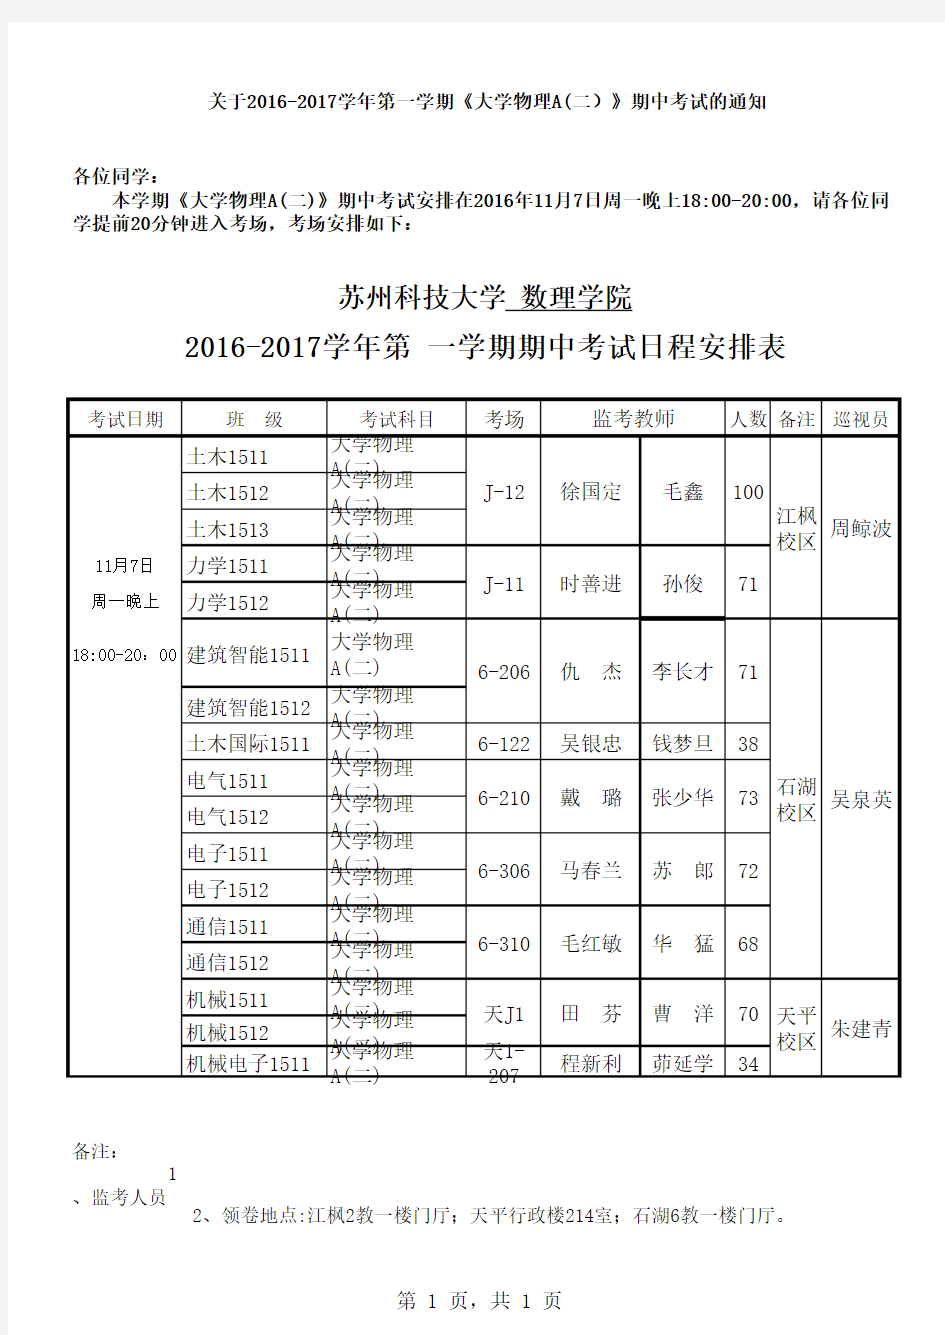 苏州科技大学期中考试日程安排表标准格式